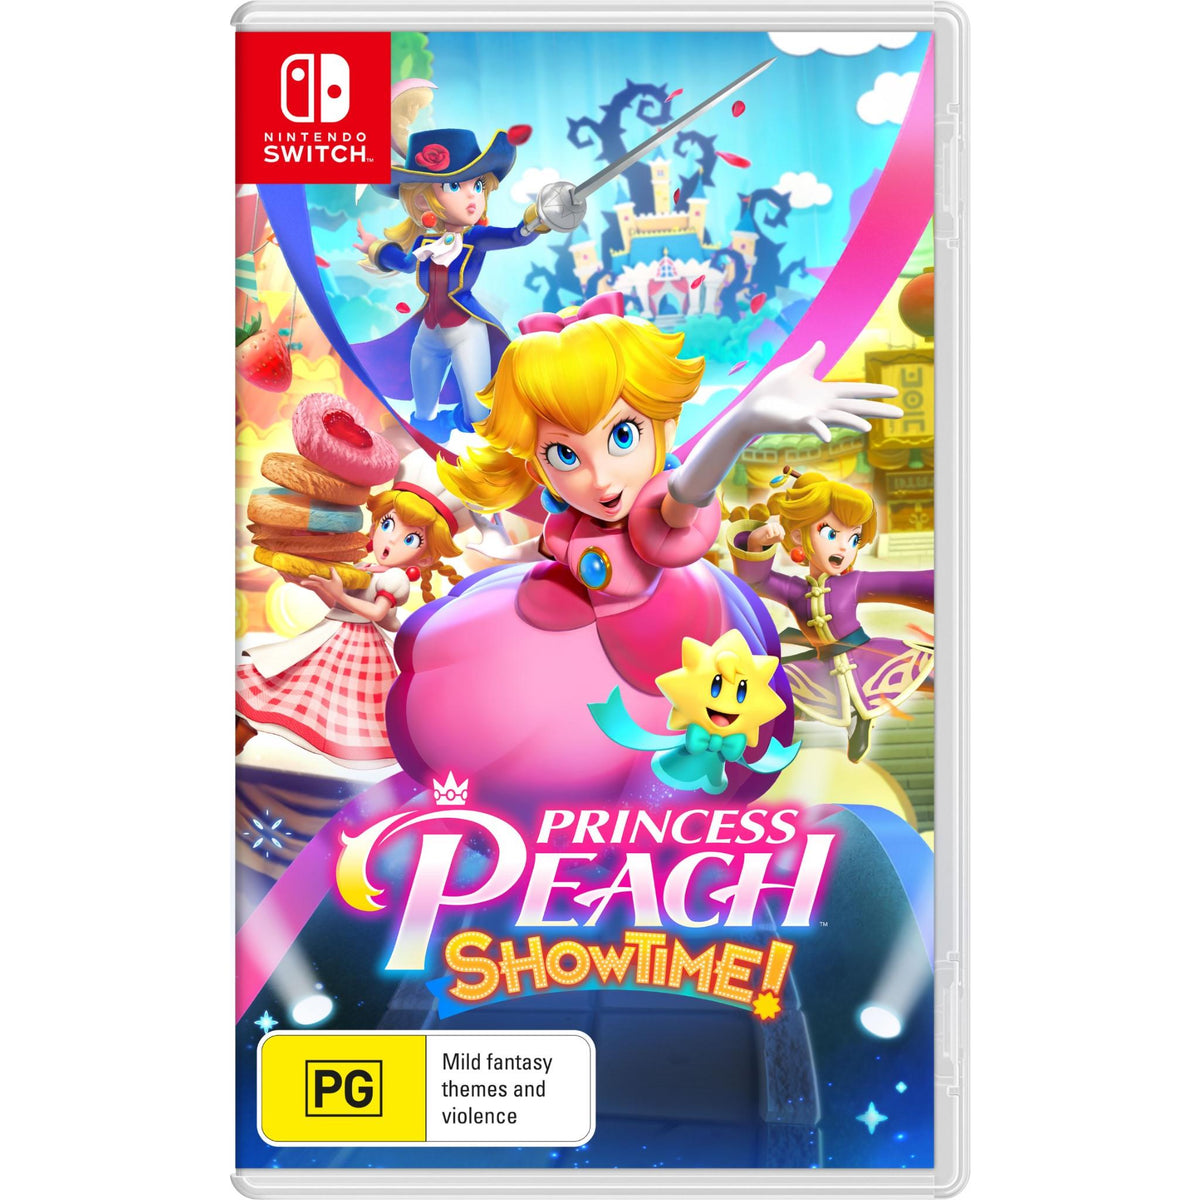 Princess Peach Showtime! (Nintendo Switch)